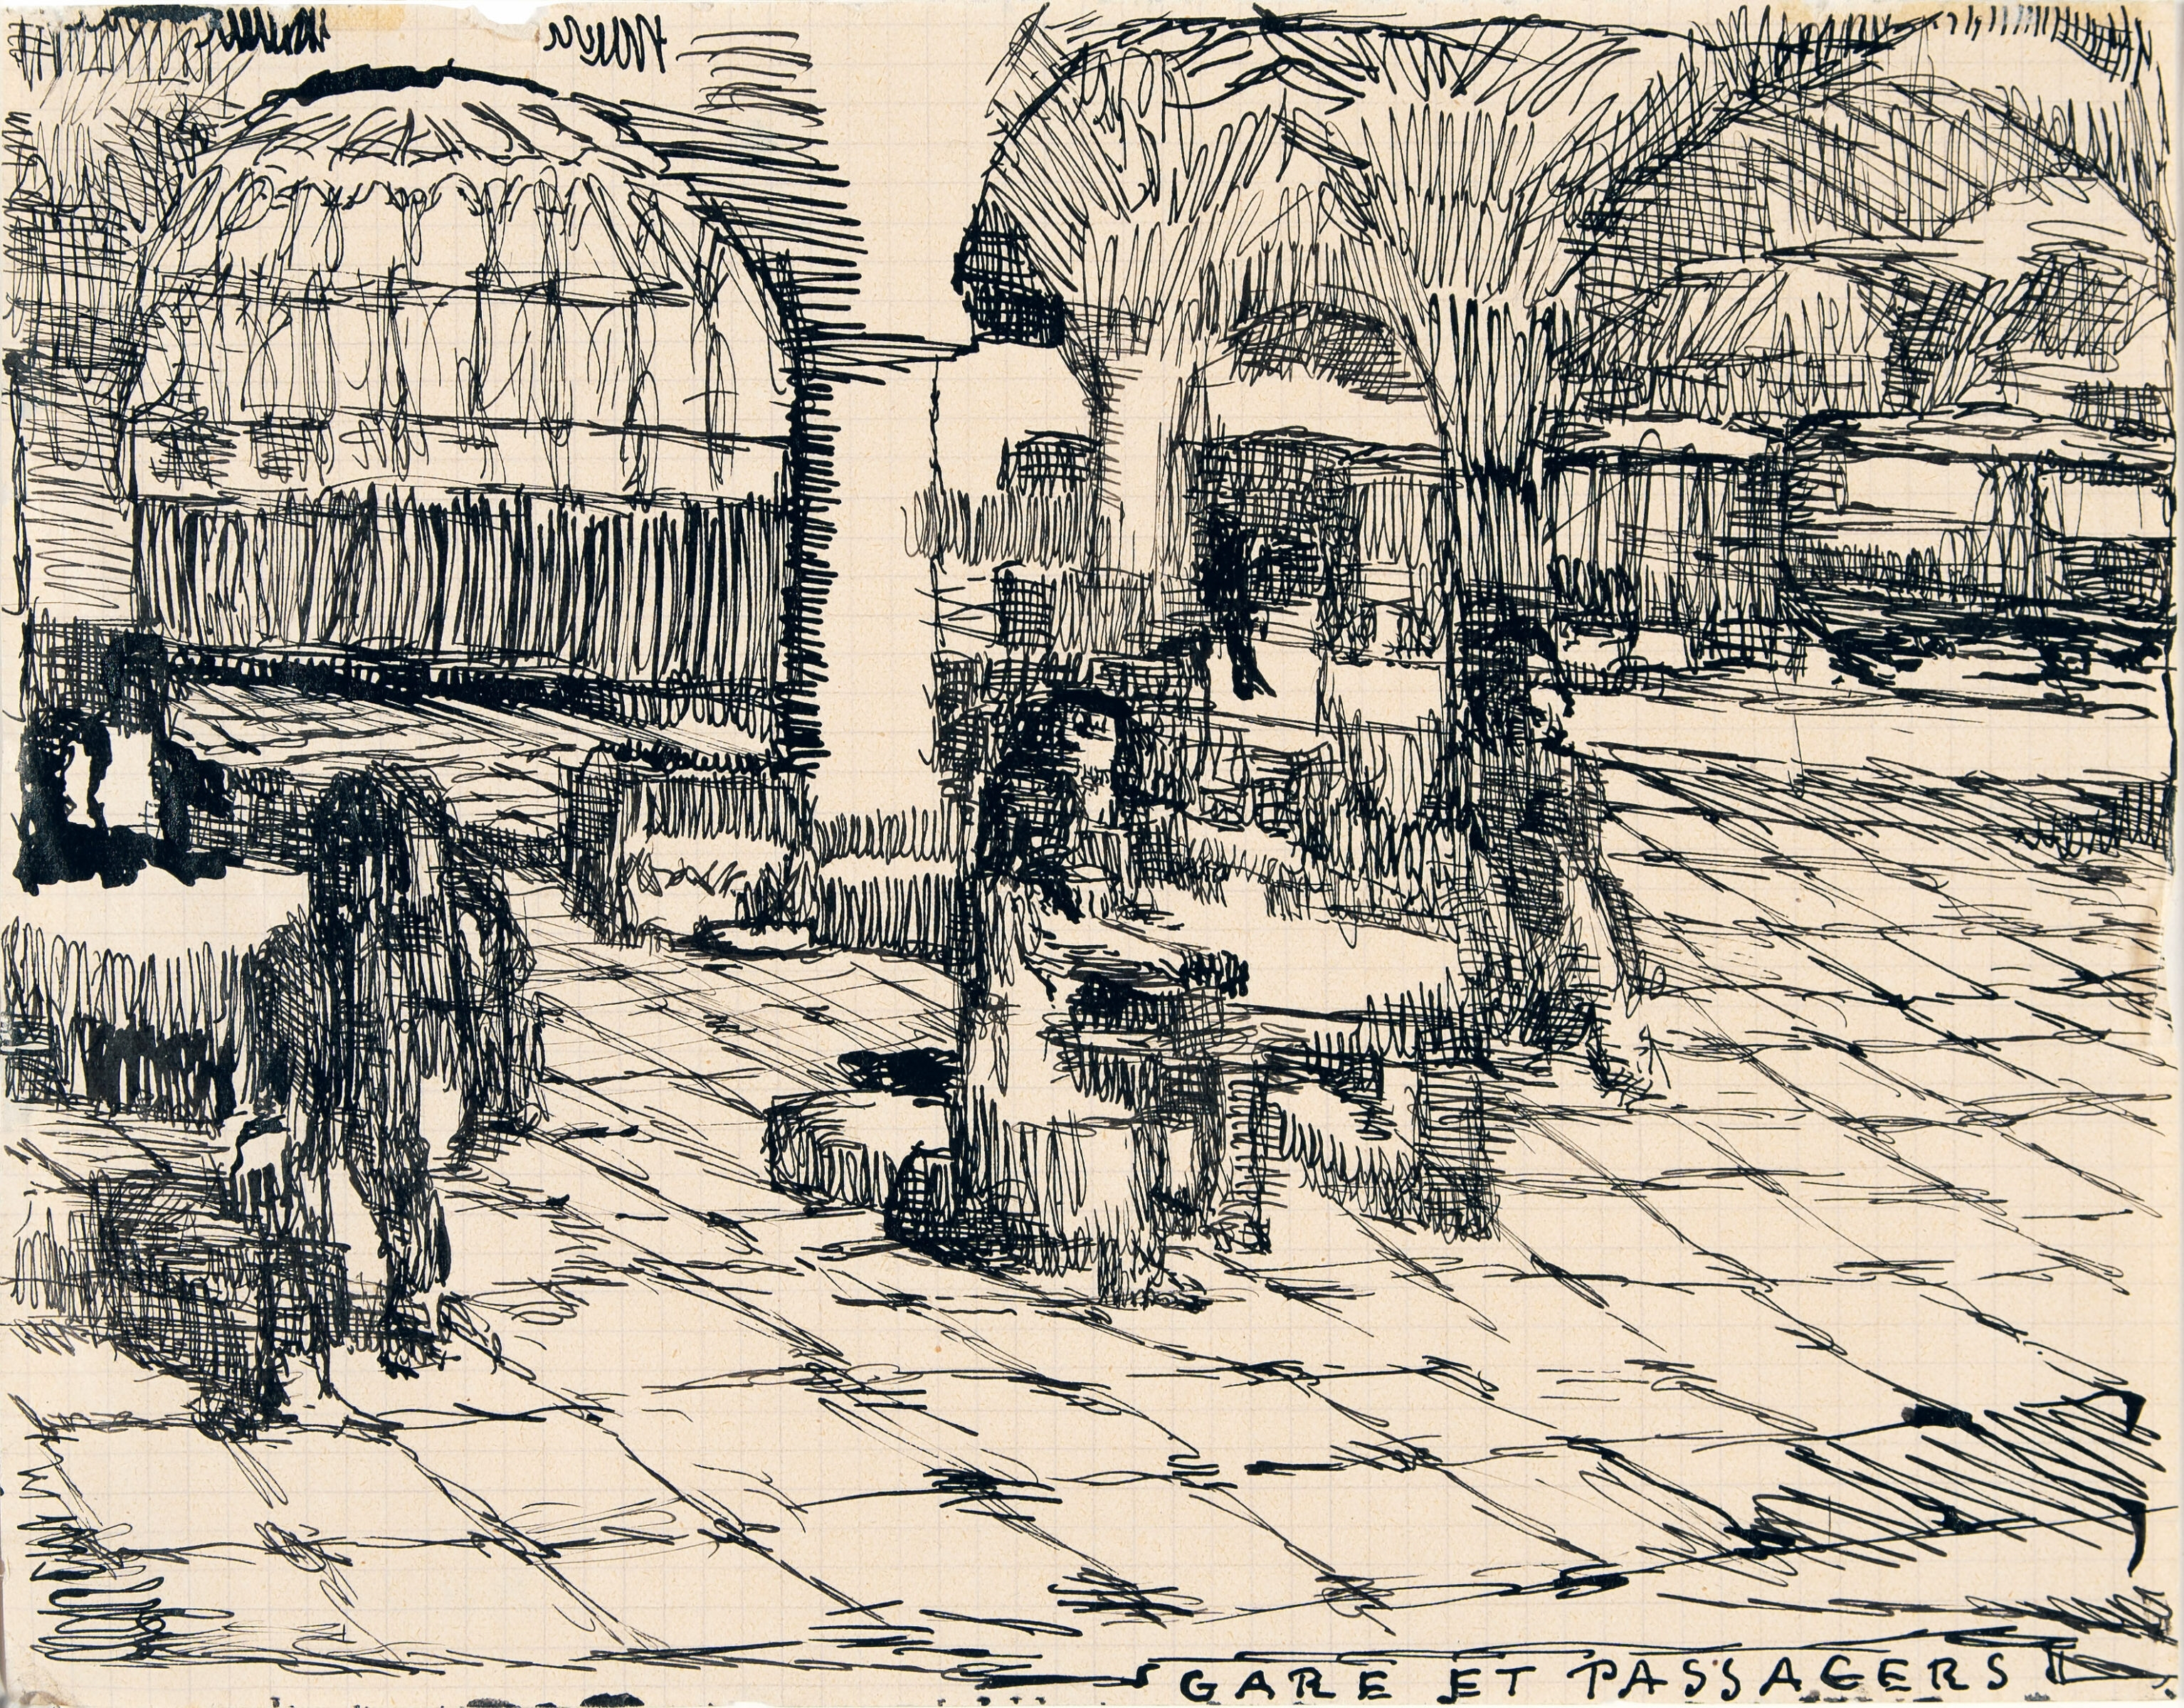 Gare et passagers. Feder in Tusche auf kariertem Papier. Um 1925. 17,3 x 22,1 cm, im Passepartout freigestellt - Louis Soutter